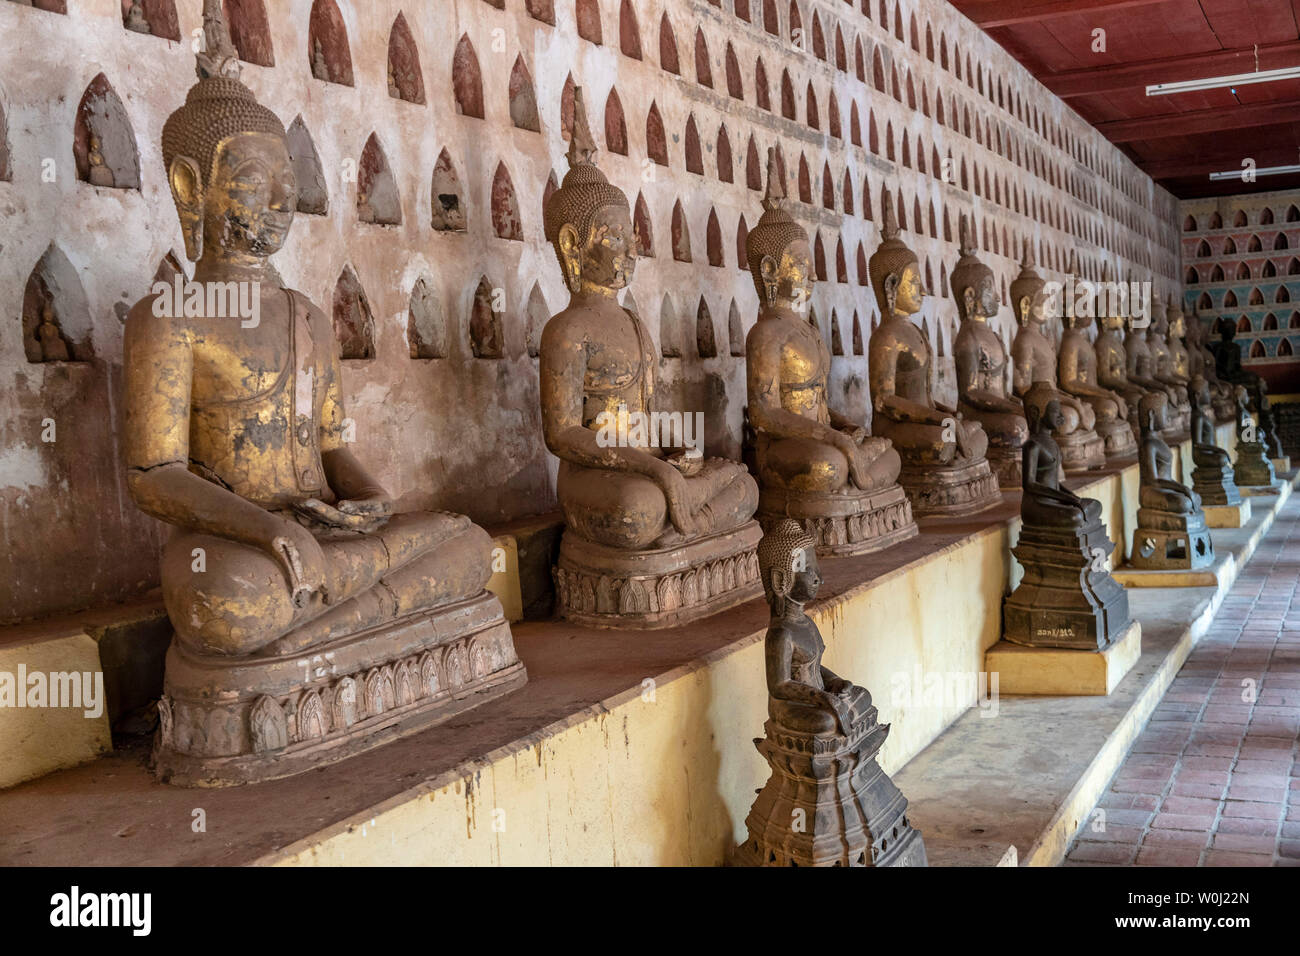 Buddhas, Wat Si Saket, buddhistisches Kloster, Vientiane, Laos | Buddhas im Wat Si Saket buddhistische Kloster in Vientiane, Laos | Stockfoto